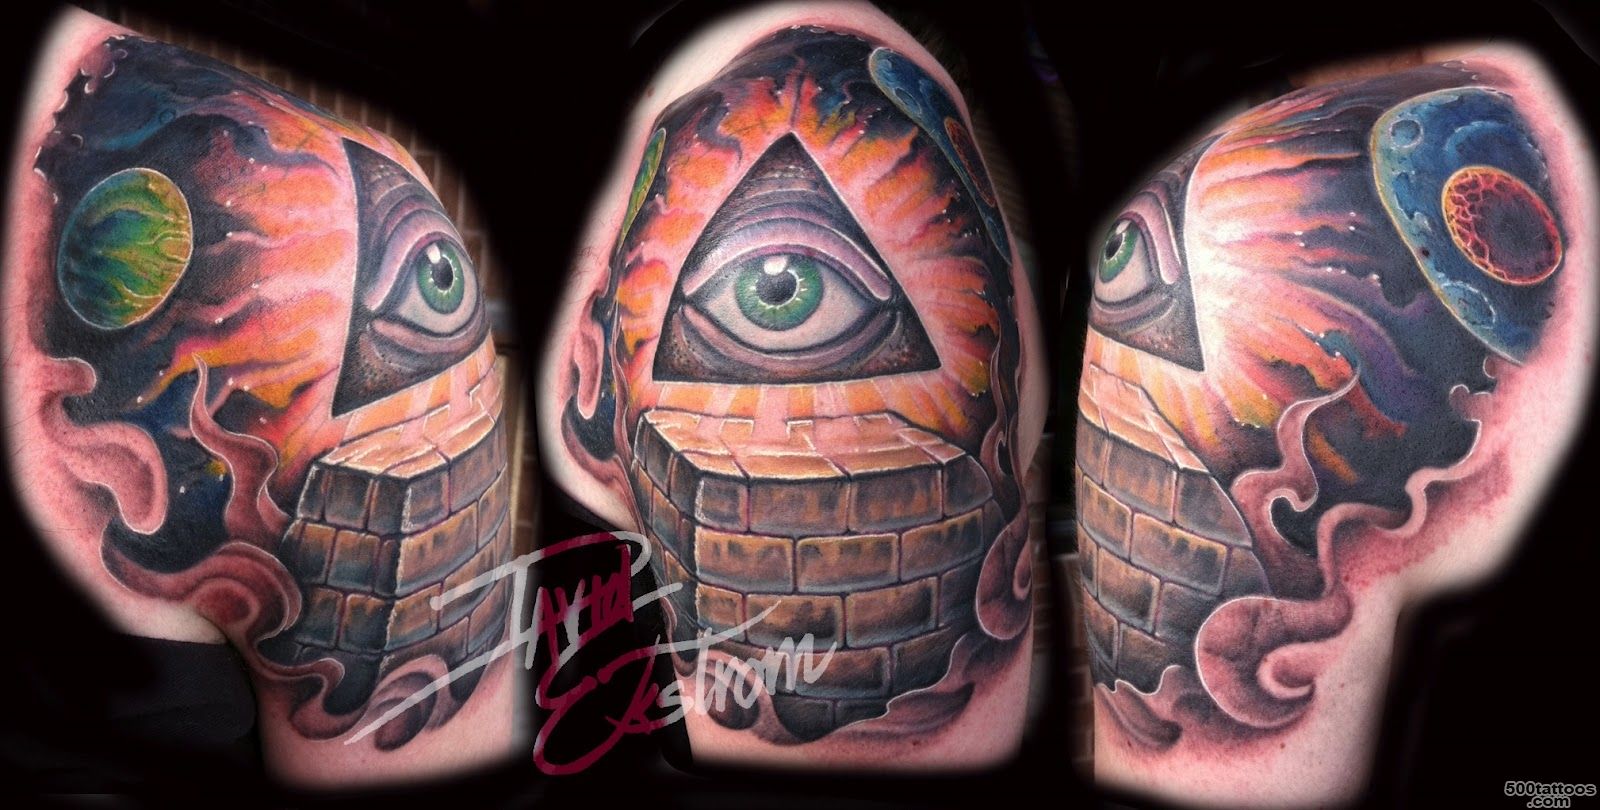 PYRAMID TATTOOS   Tattoes Idea 2015  2016_13